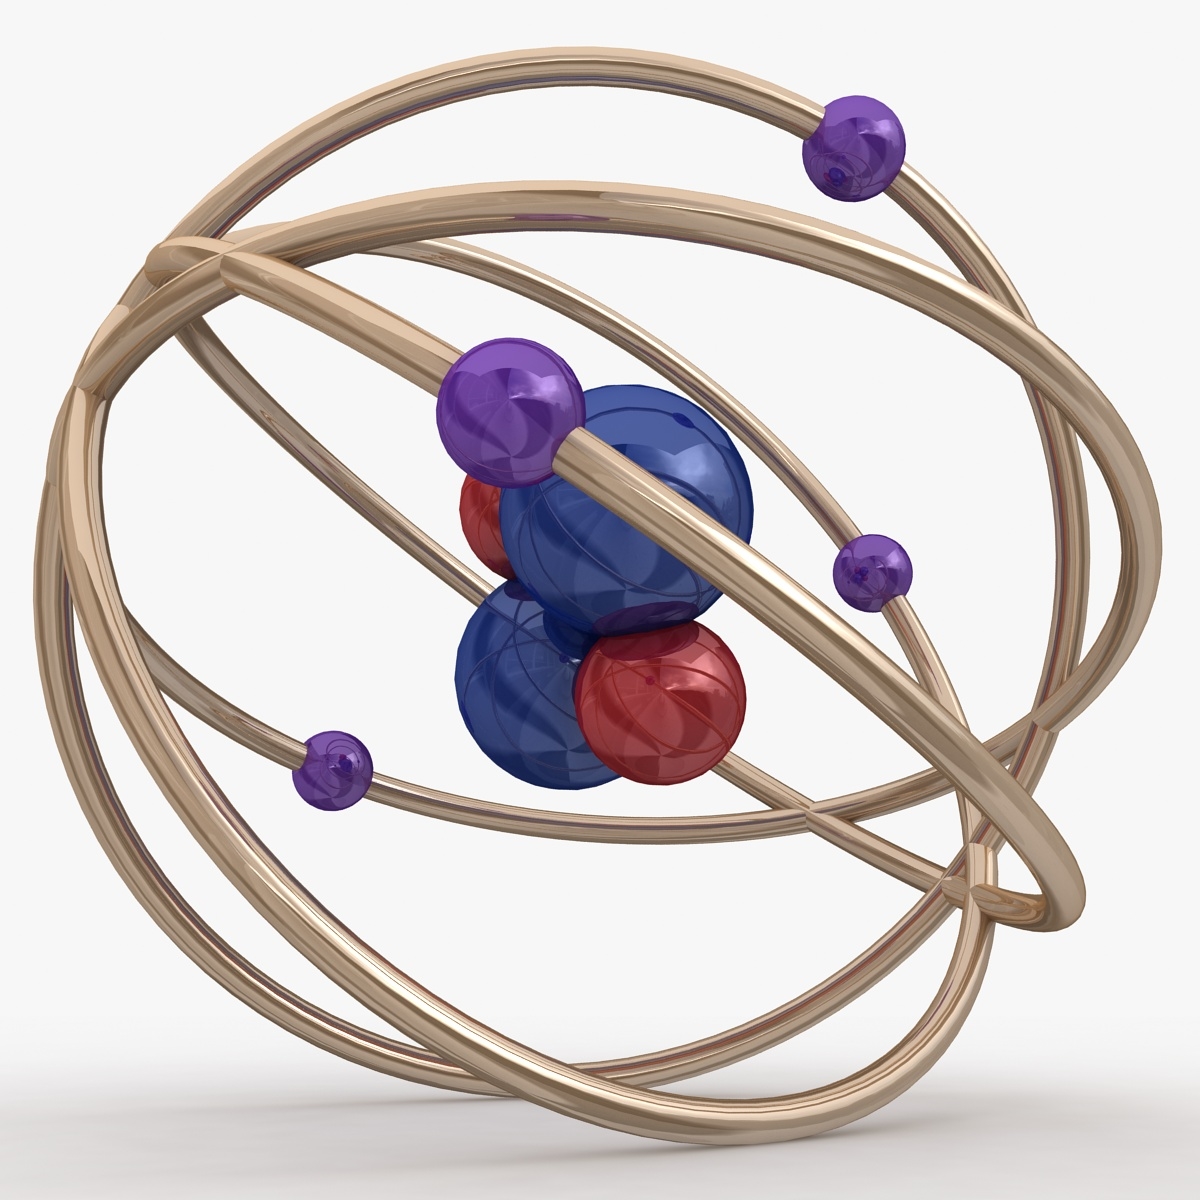 Атом 1.5. Atom 3d model. 3д модель атома. Модель атома статуэтка. Конструктор модель атома.